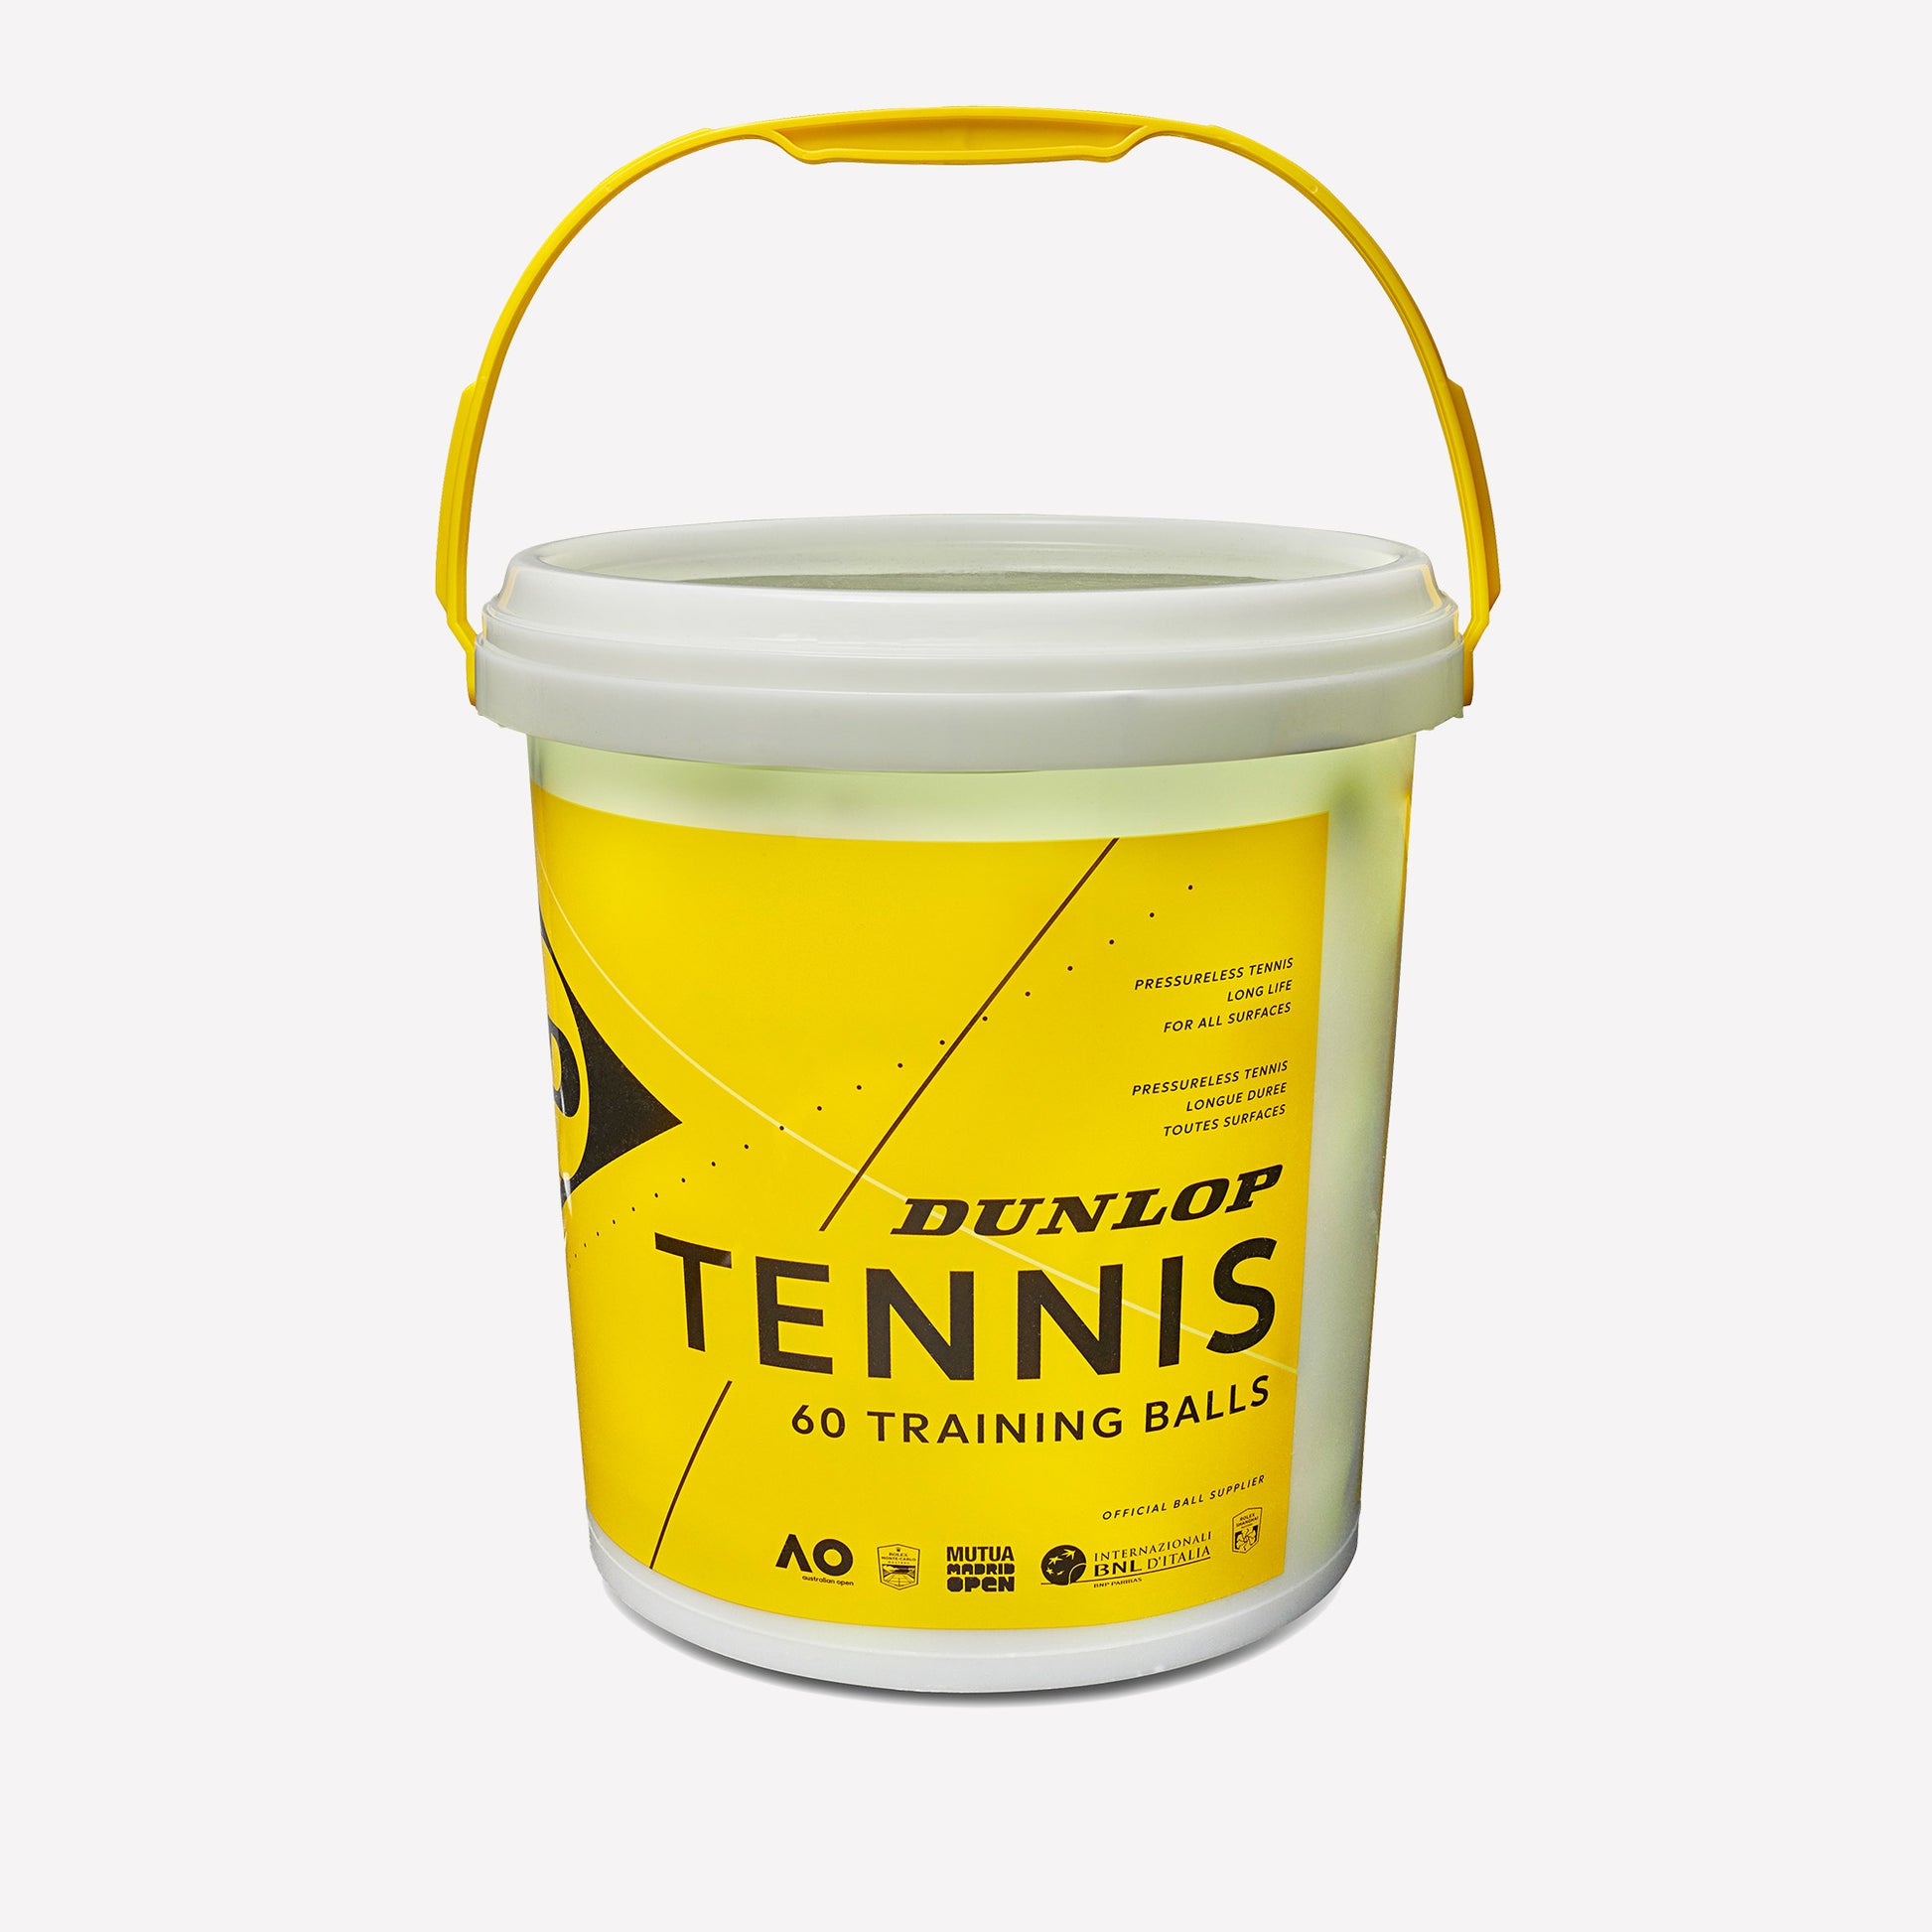 Dunlop Training 60 Tennis Balls Bucket 1